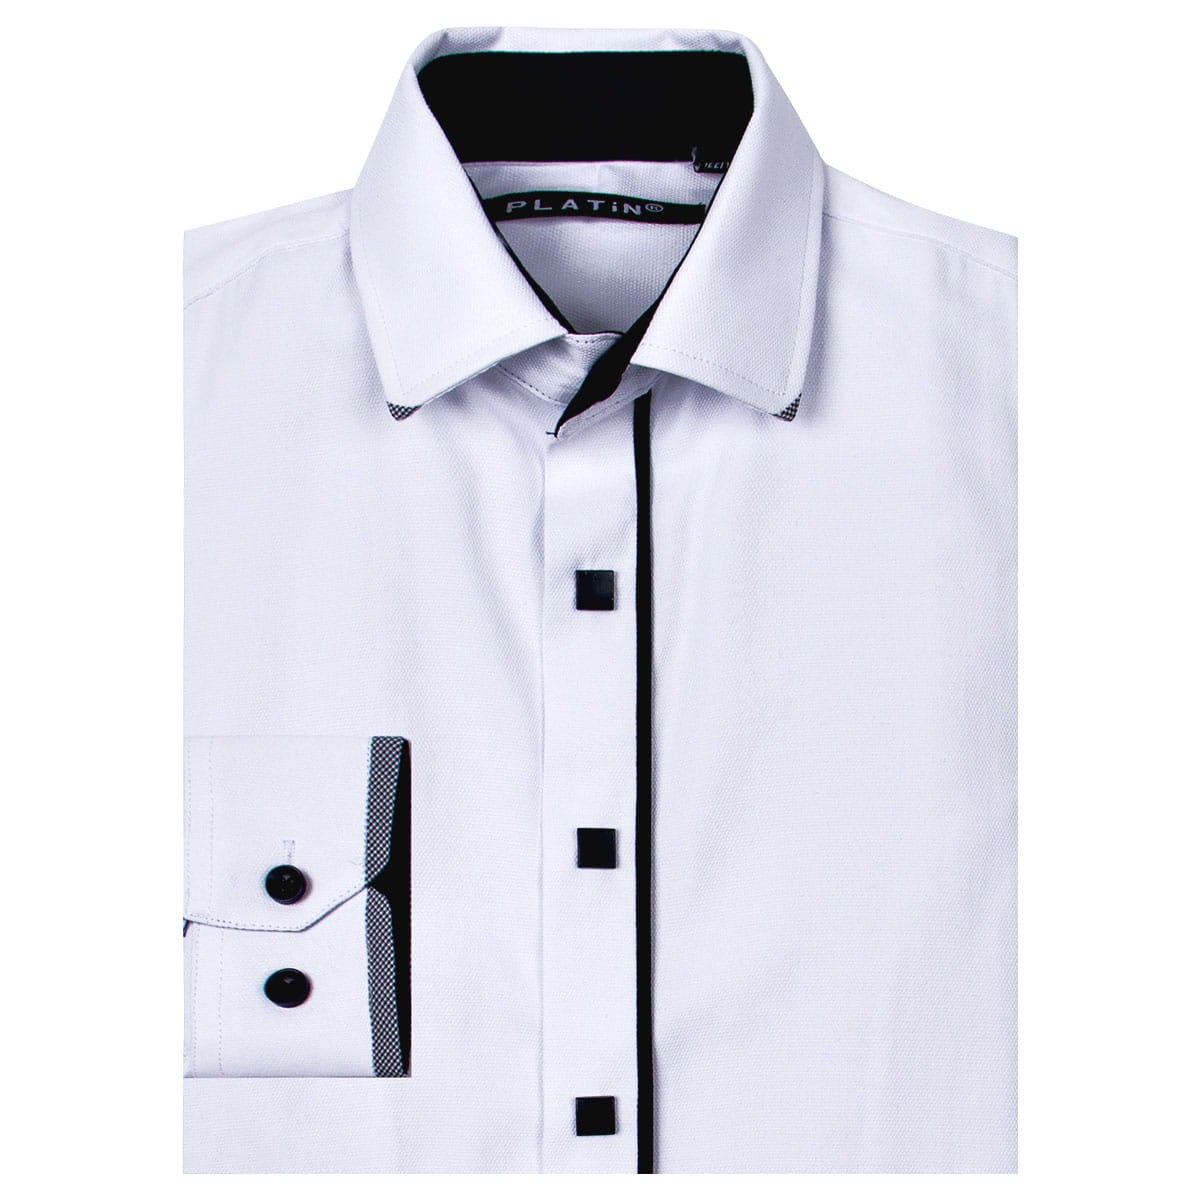 Купить рубашку кнопки. Школьная рубашка. Белая рубашка Школьная для мальчиков. Рубашка мужская Школьная. Рубашка белая на кнопках для мальчика.